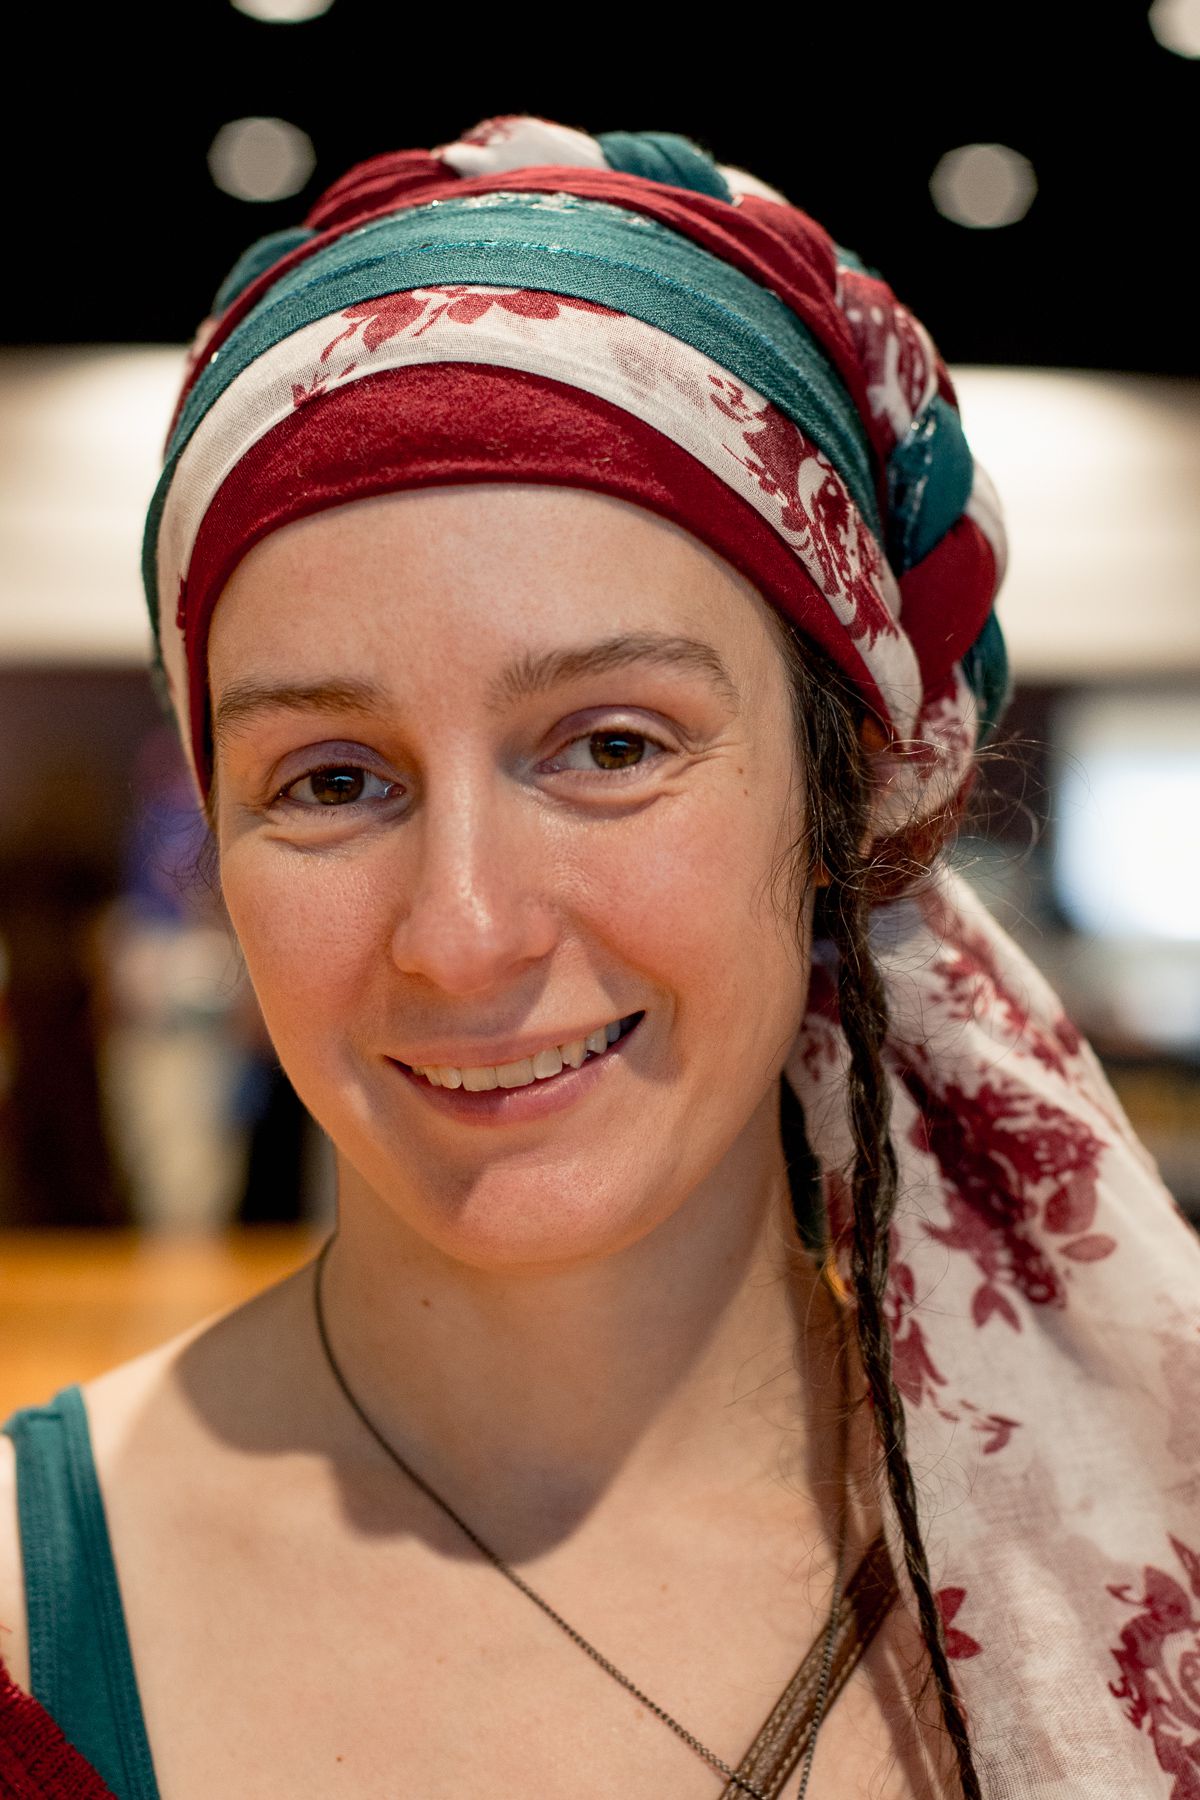 Woman in tichel, a Jewish headwrap